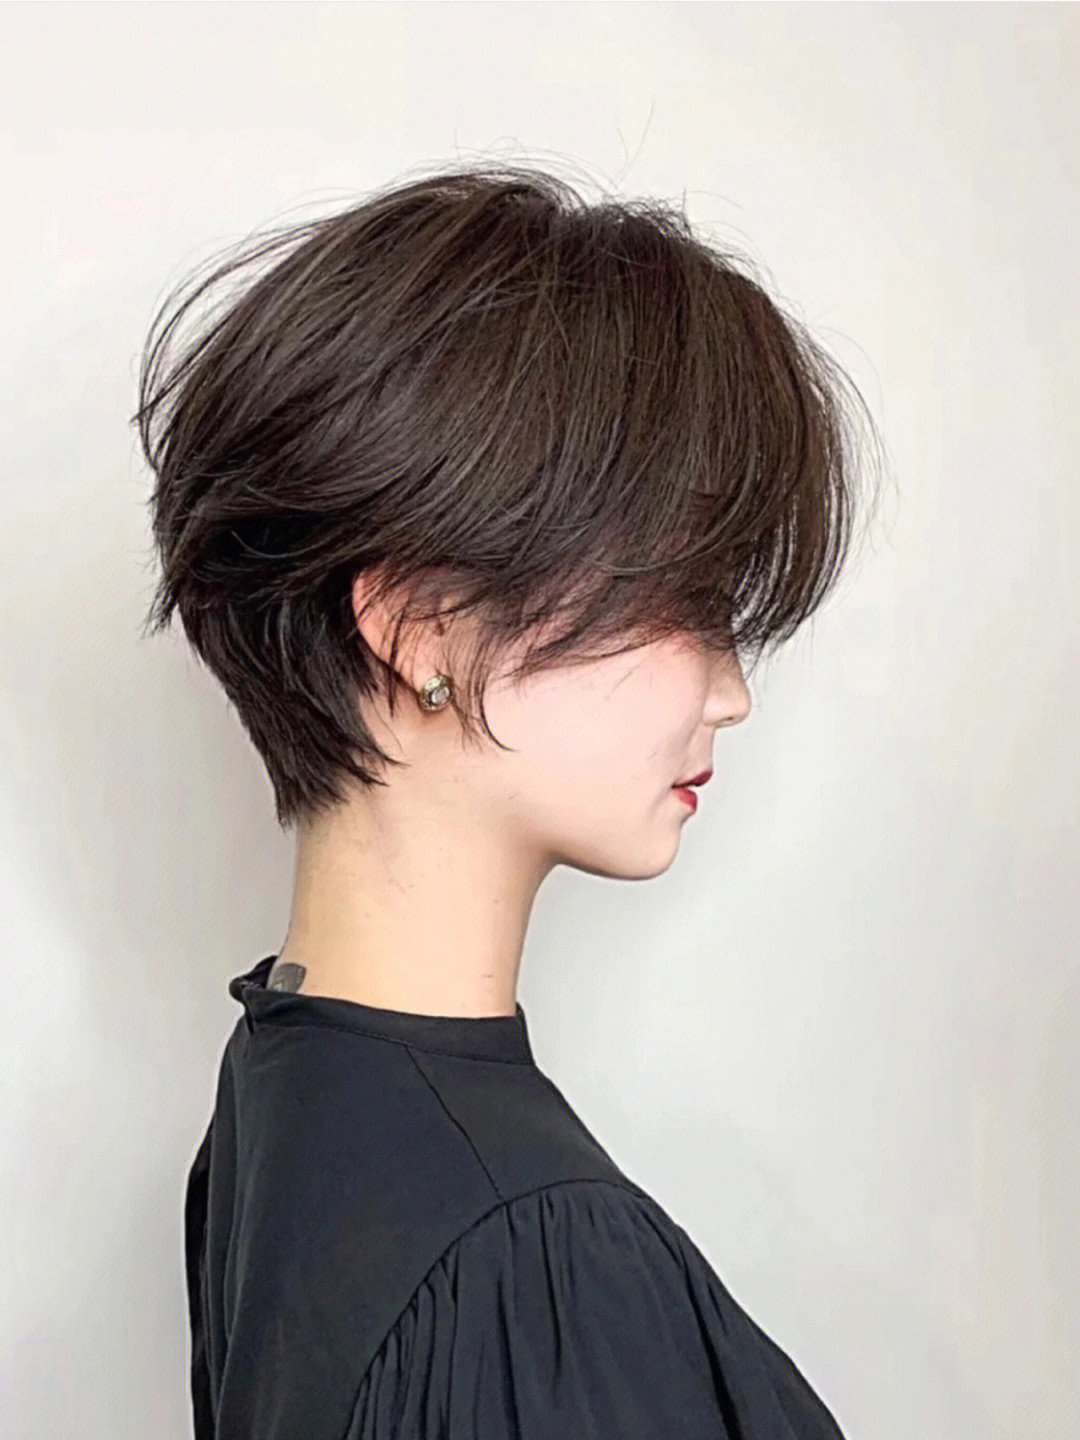 脸型设计:头顶尖,太阳穴凹陷,额头偏高发型设计:韩式超短发的特点一般